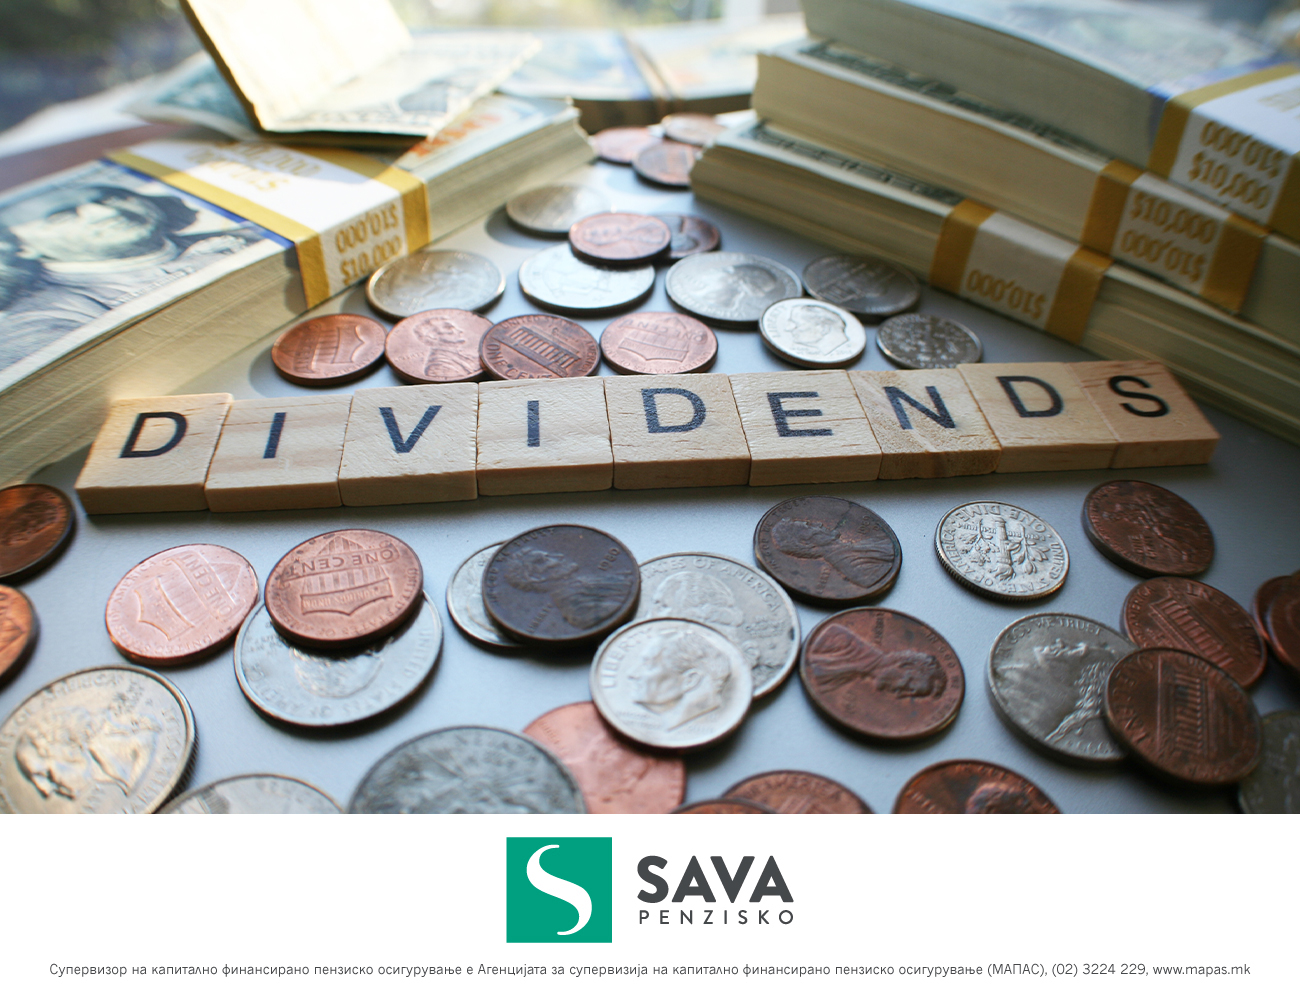 Повеќе од 30 милиони денари од камати и над 500 илјади долари приливи од дивиденди во пензиските фондови управувани од Сава пензиско друштво